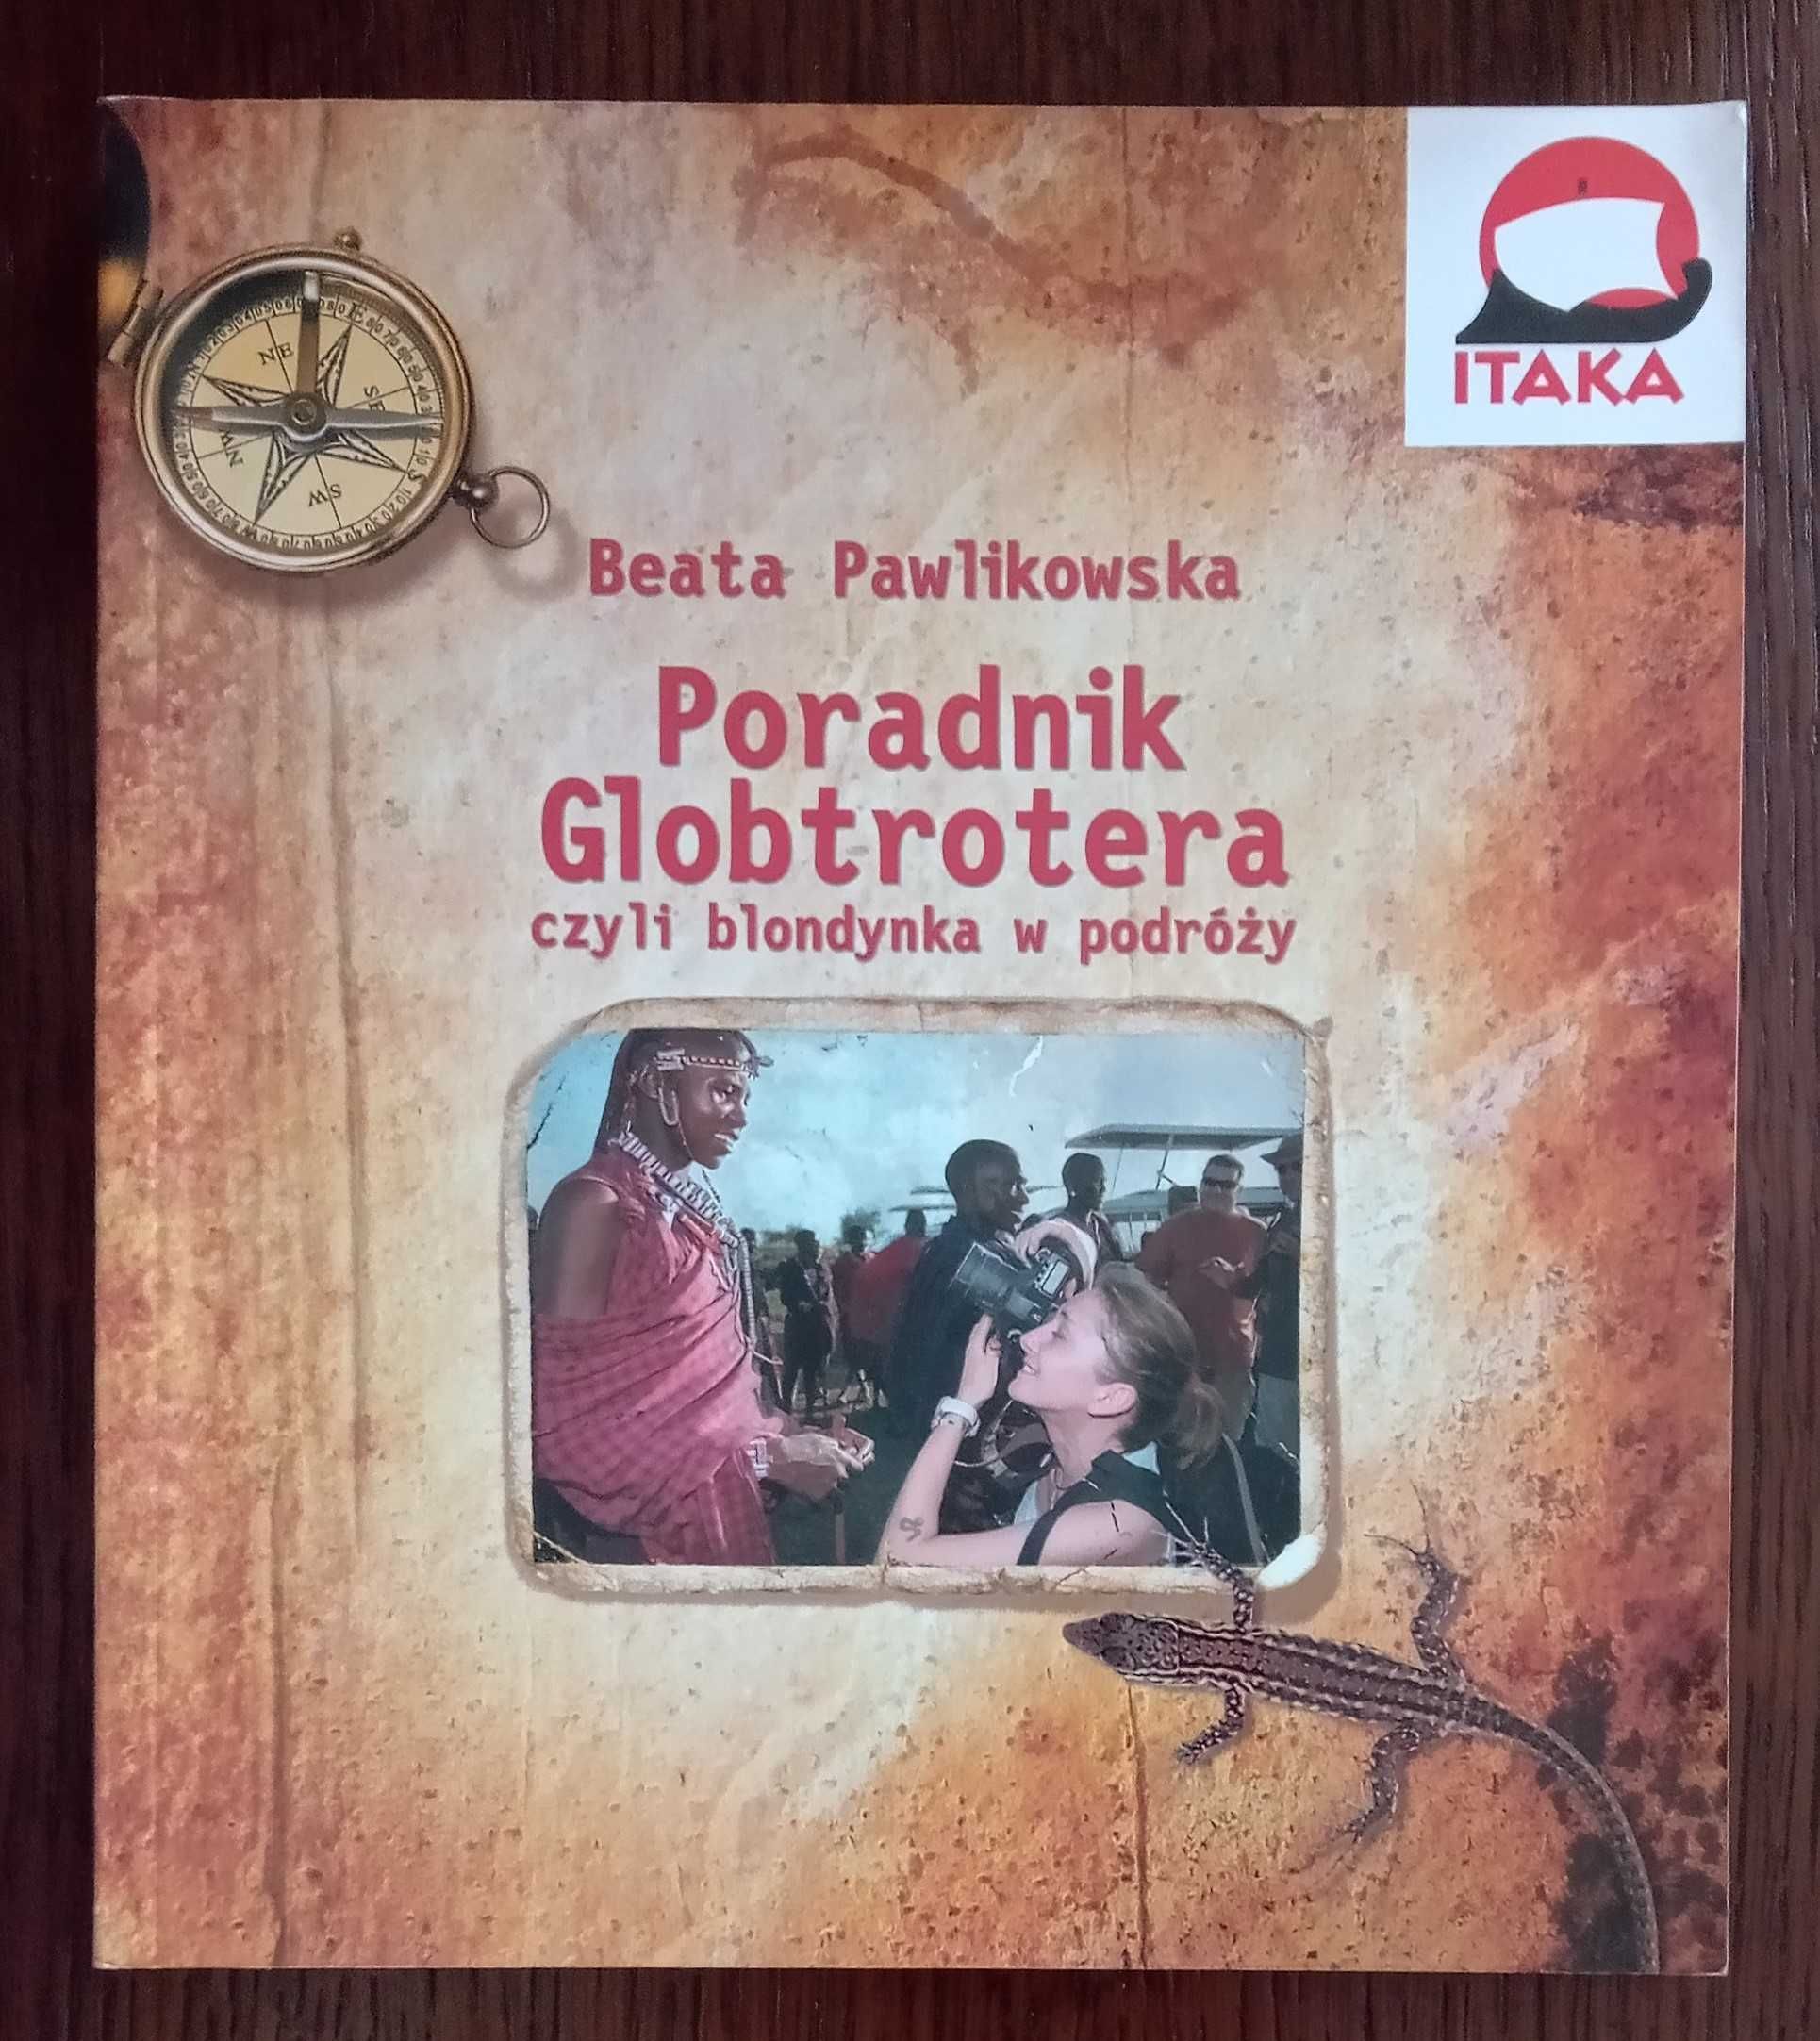 Poradnik Globtrotera czyli blondynka w podróży - Beata Pawlikowska